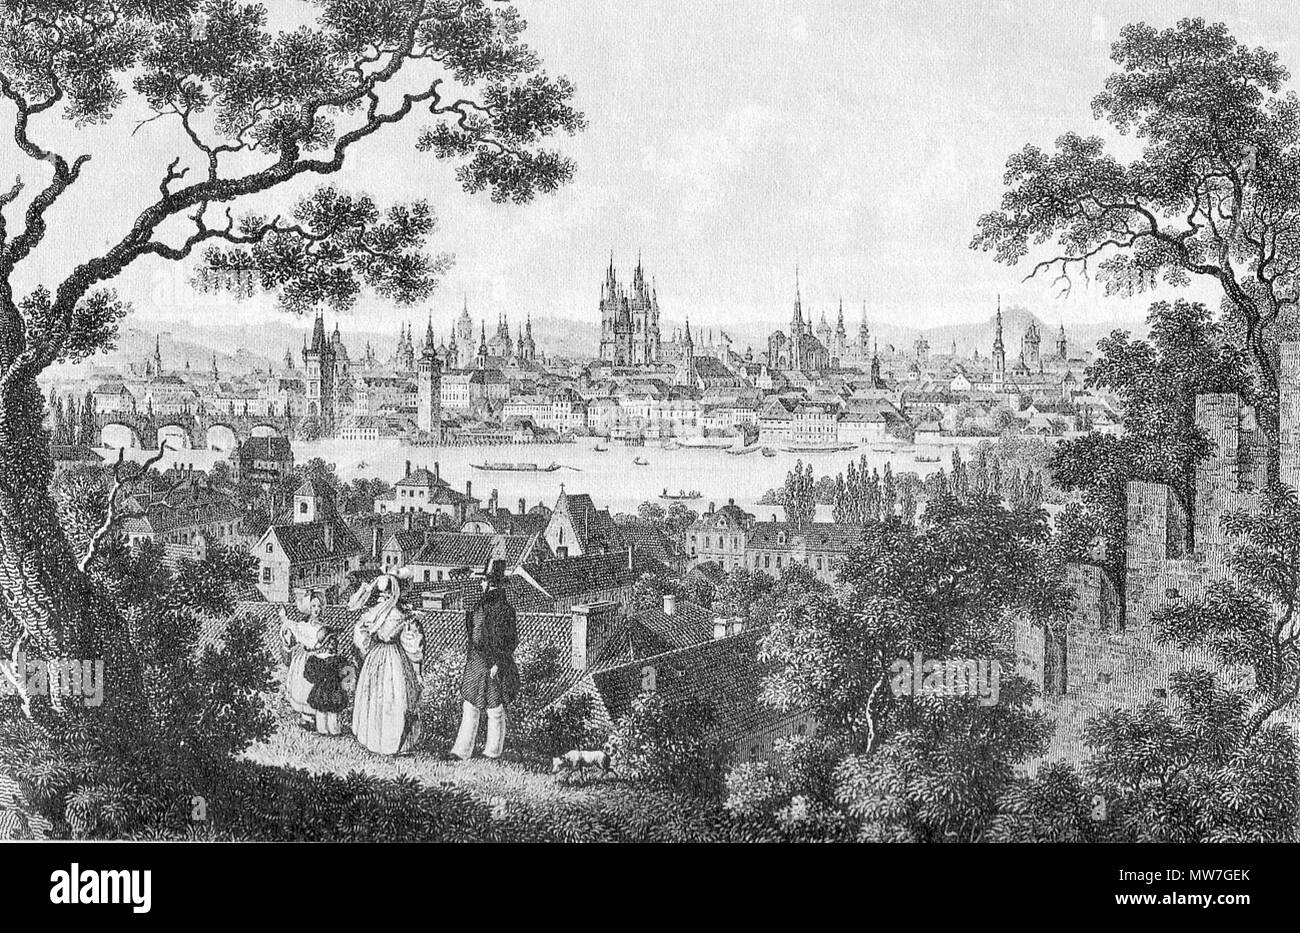 . Historische Ansicht von Prag in Tschechien. Stahlstich. circa 1850. Wilh. Kandler, C. F. Merckel 49 Ansicht Prag um 1850 Stock Photo